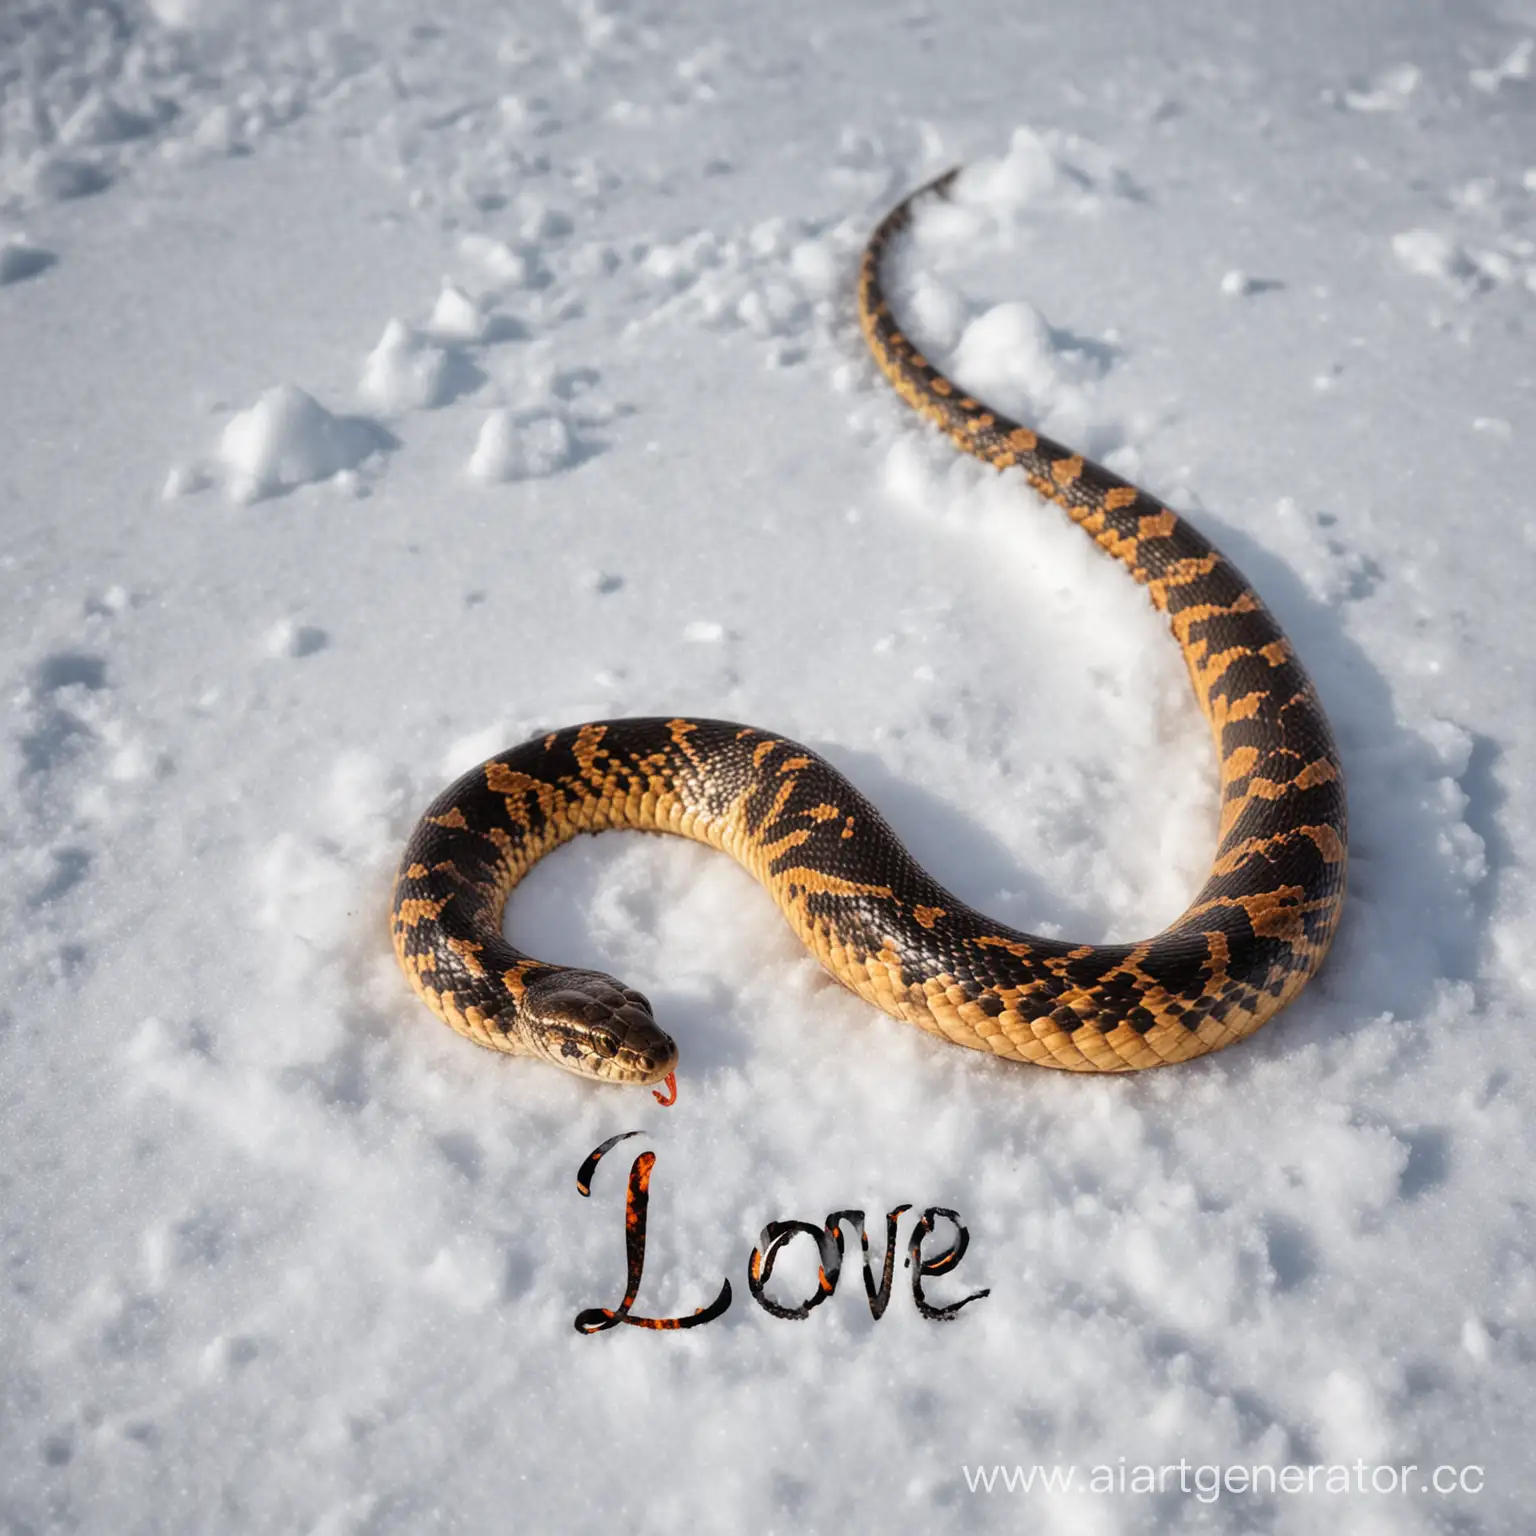 Змея которая горит. С надписью люблю. На фоне снег
